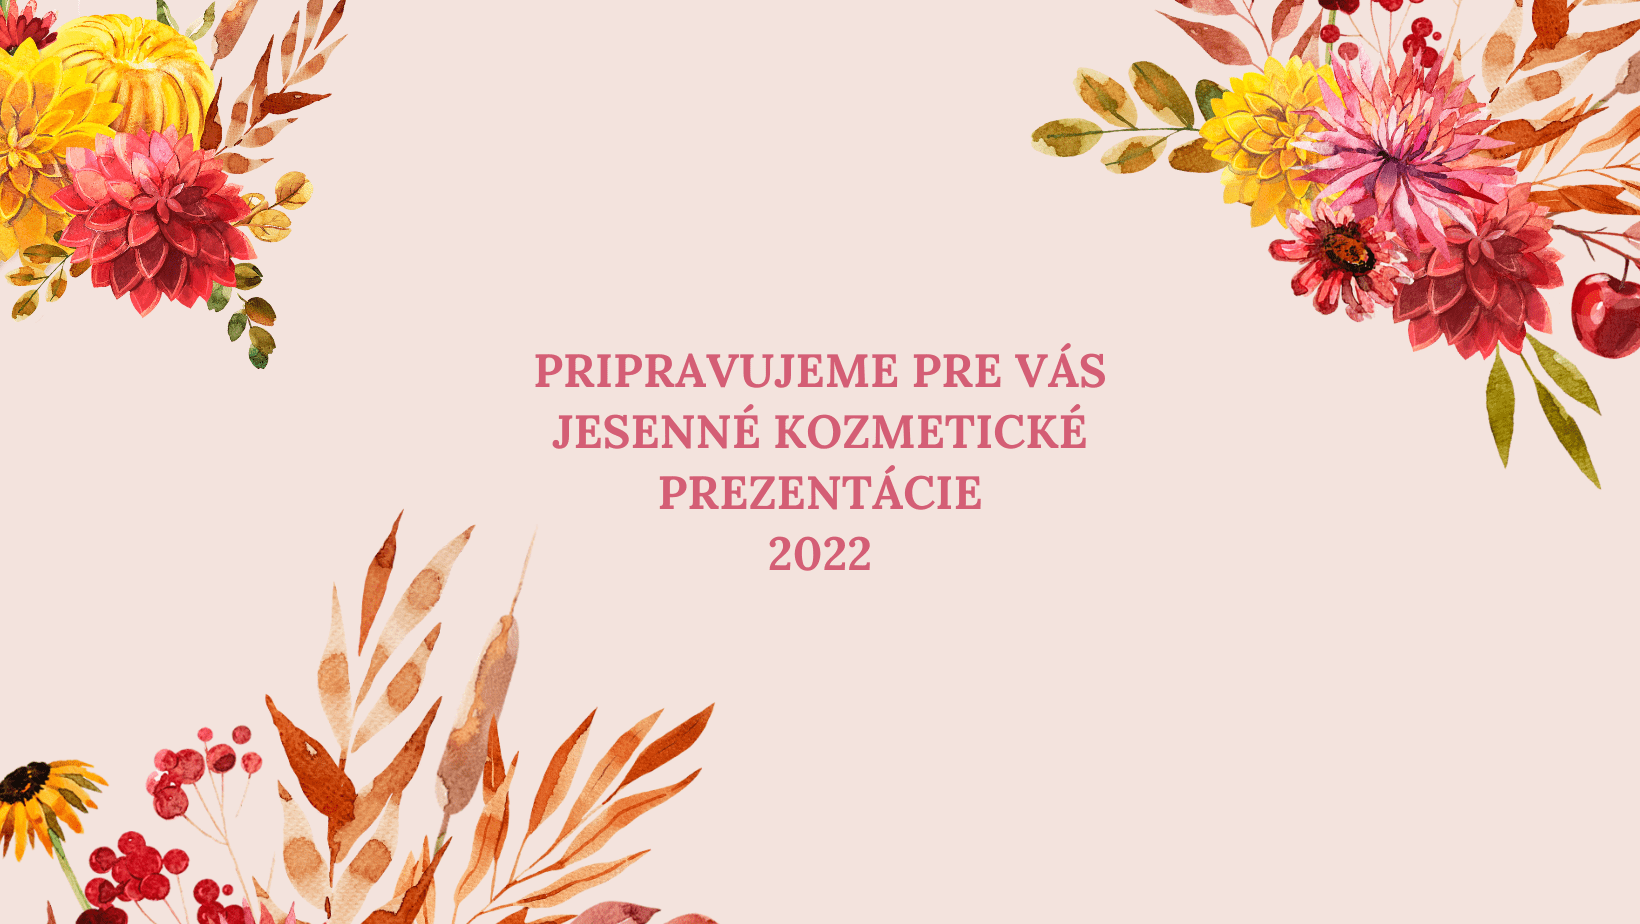 Jesenné kozmetické prezentácie noviniek 2022